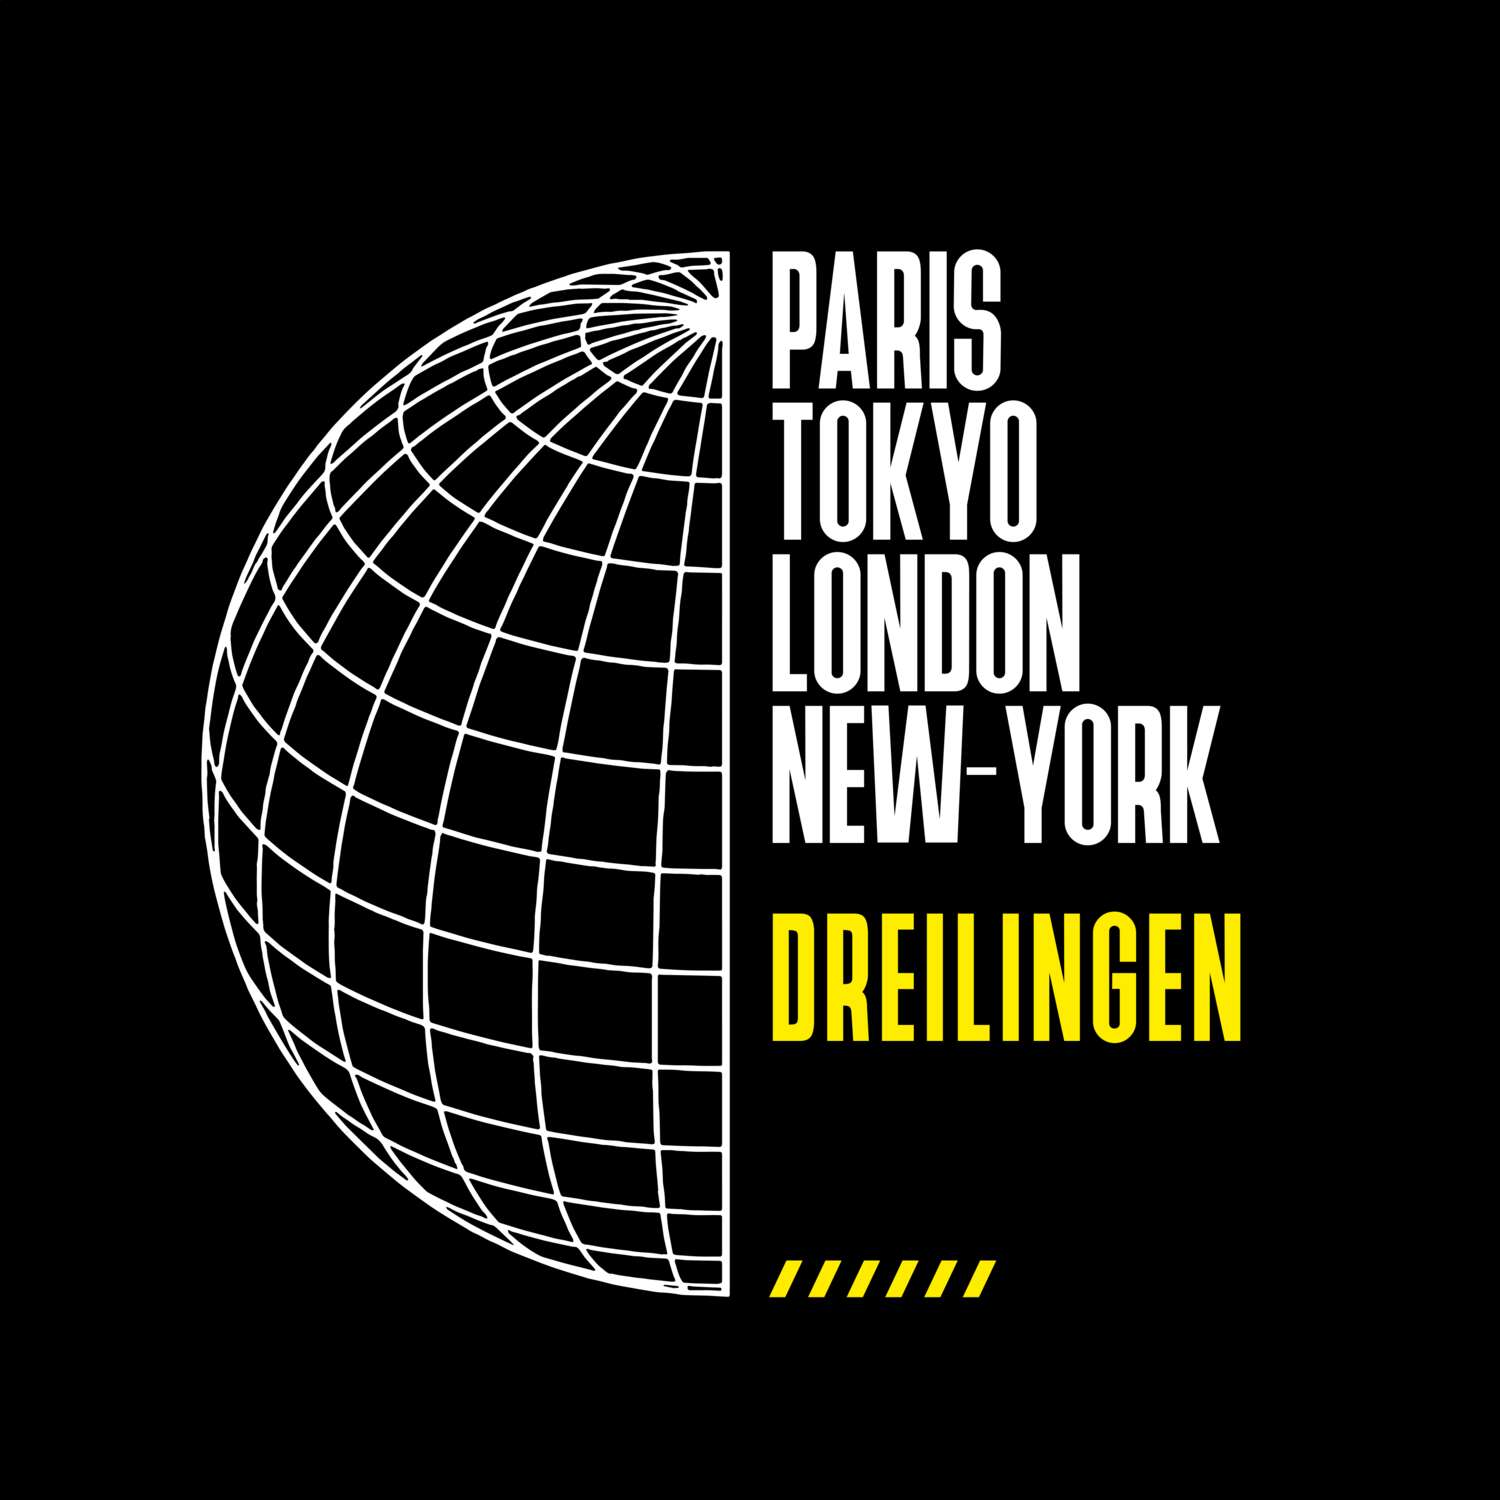 Dreilingen T-Shirt »Paris Tokyo London«